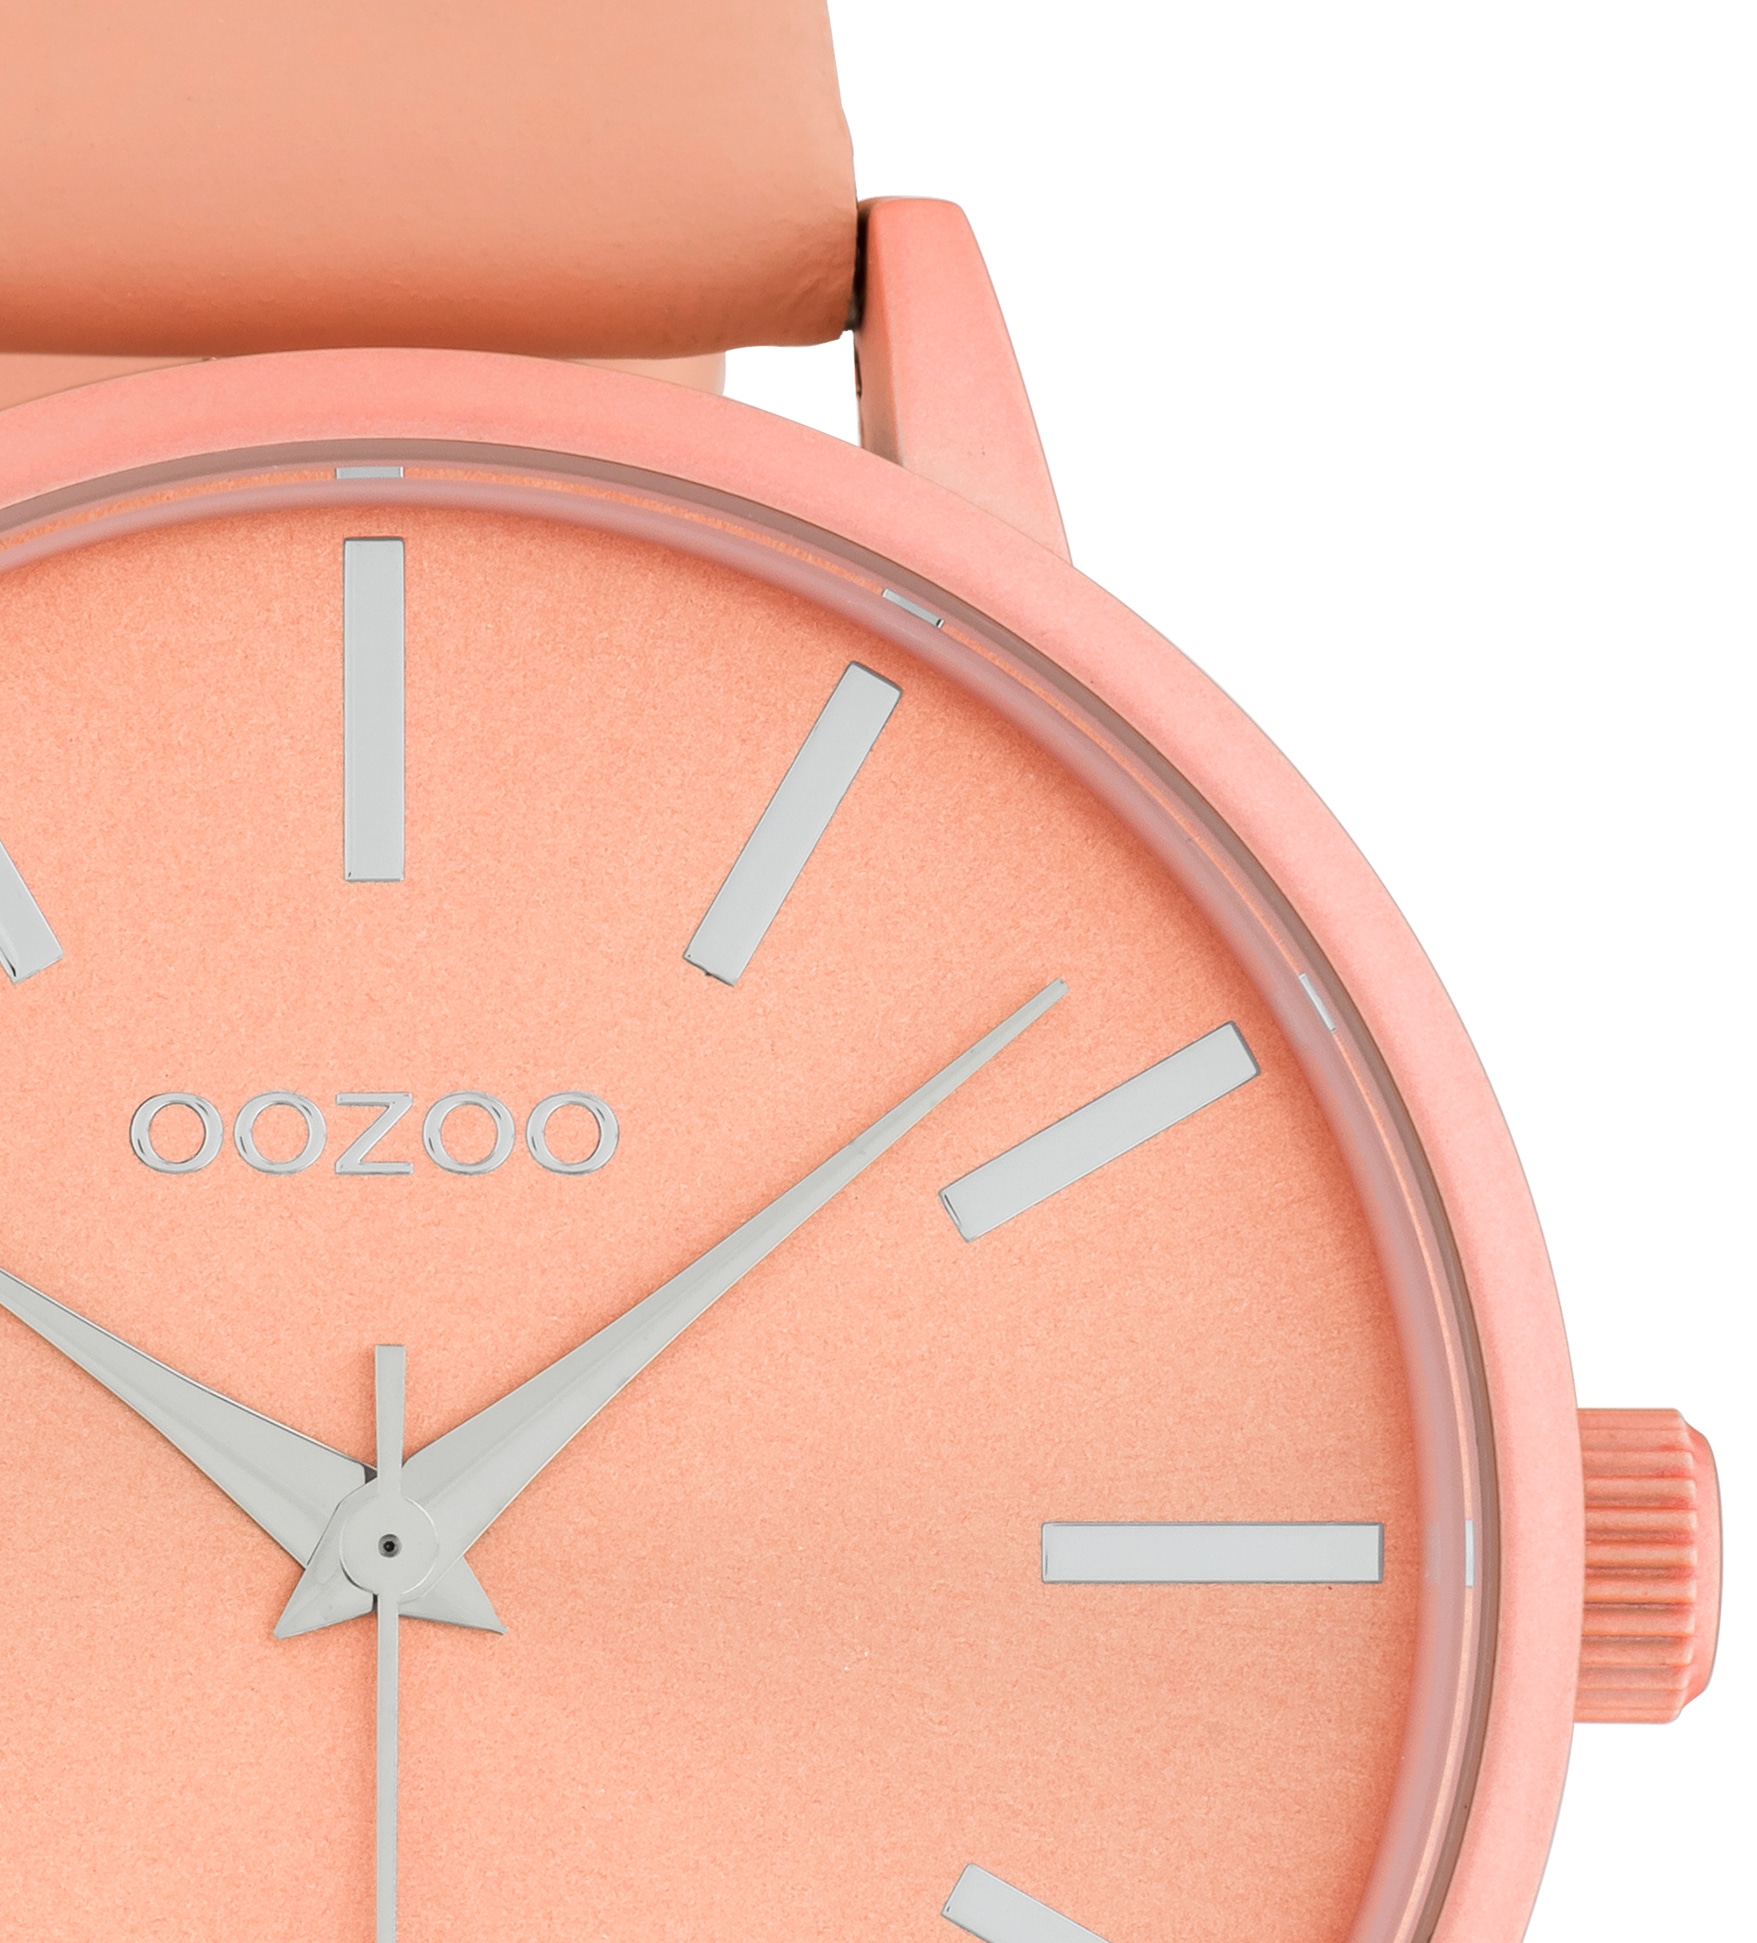 OOZOO Quarzuhr »C10617«, Armbanduhr, Damenuhr